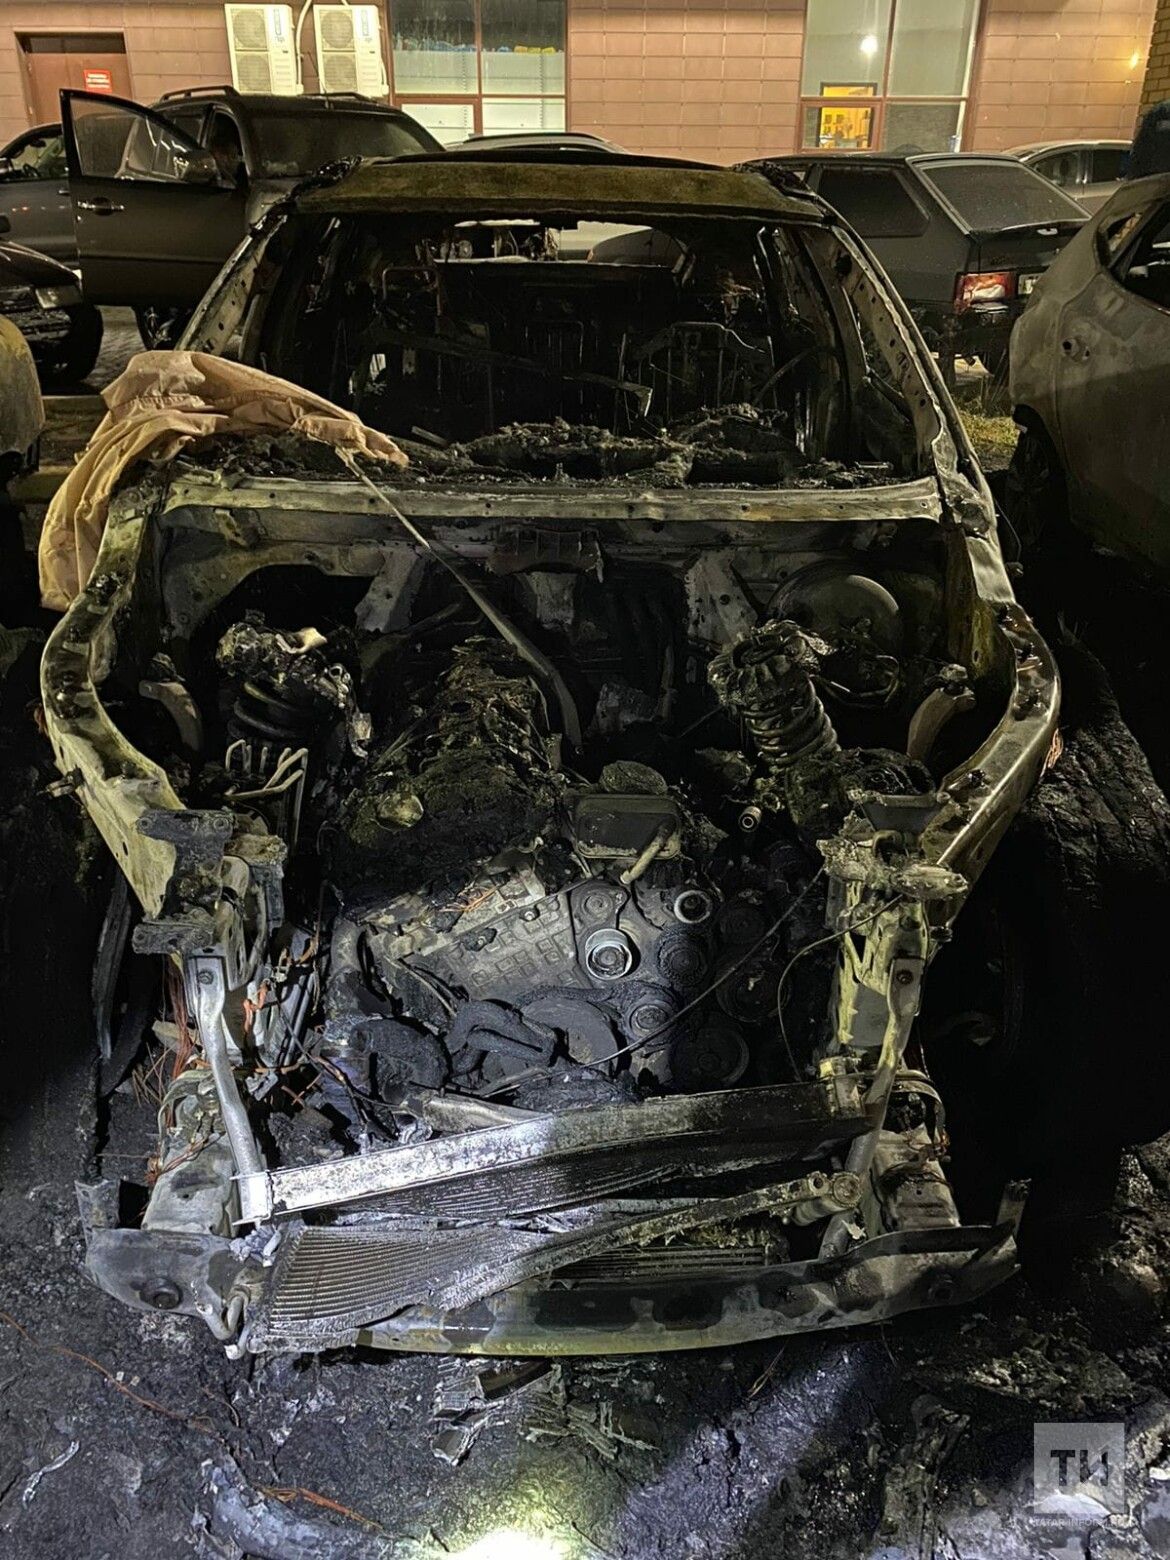 Ночью в Челнах подожгли машины, две легковушки сгорели дотла, пять повреждены частично